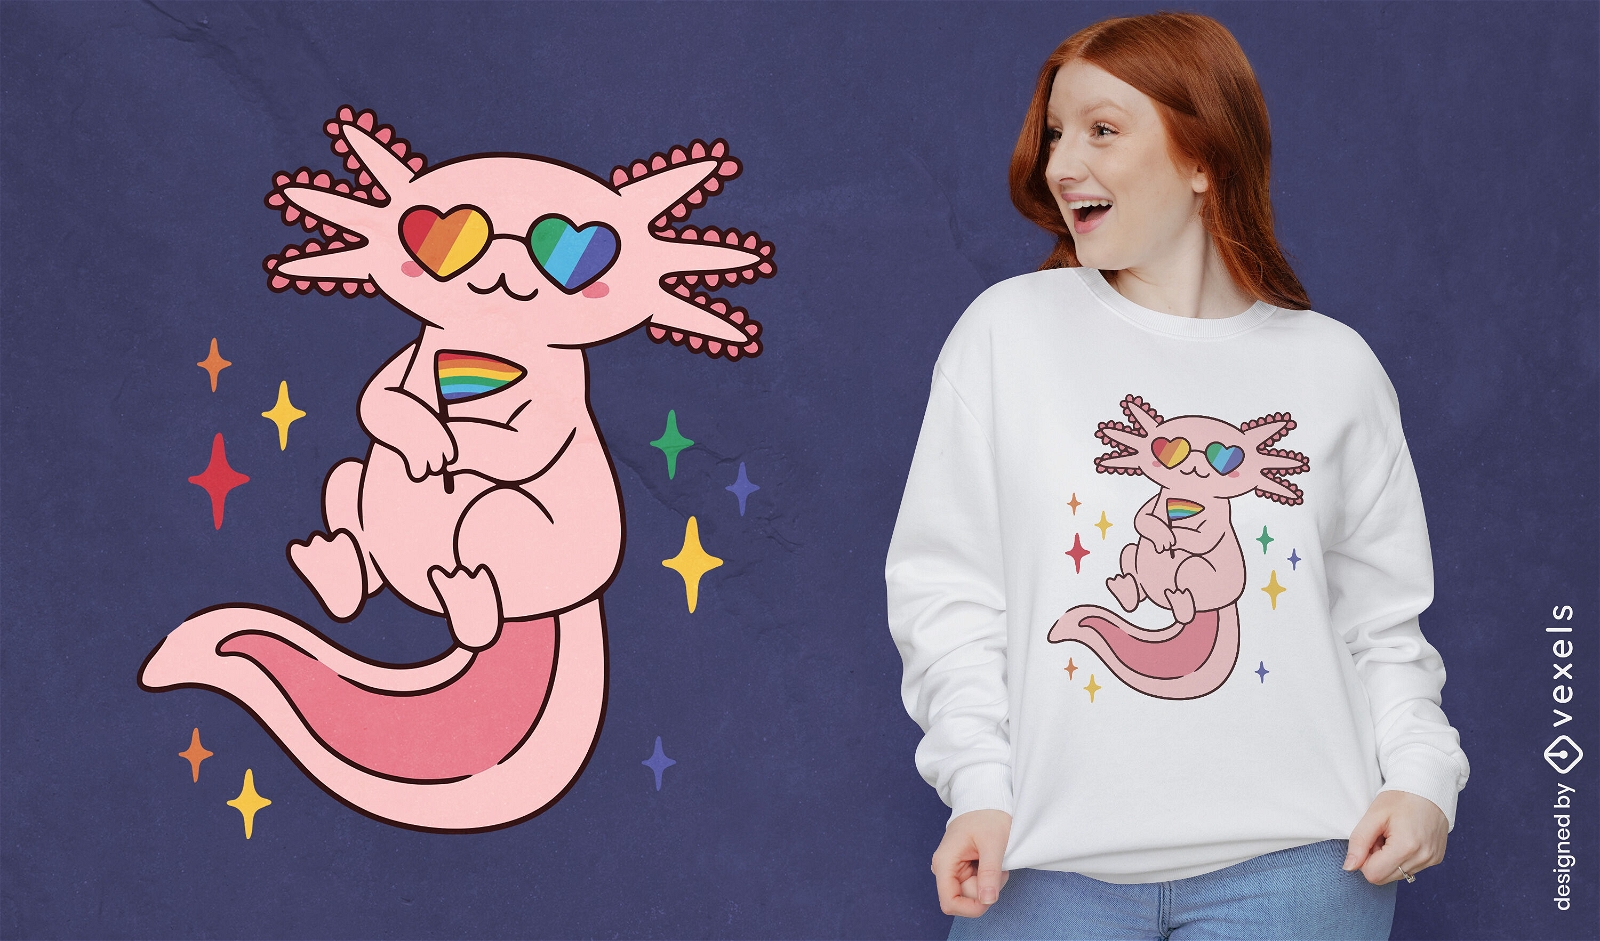 Cute Pride axolotl cartoon t-shirt design